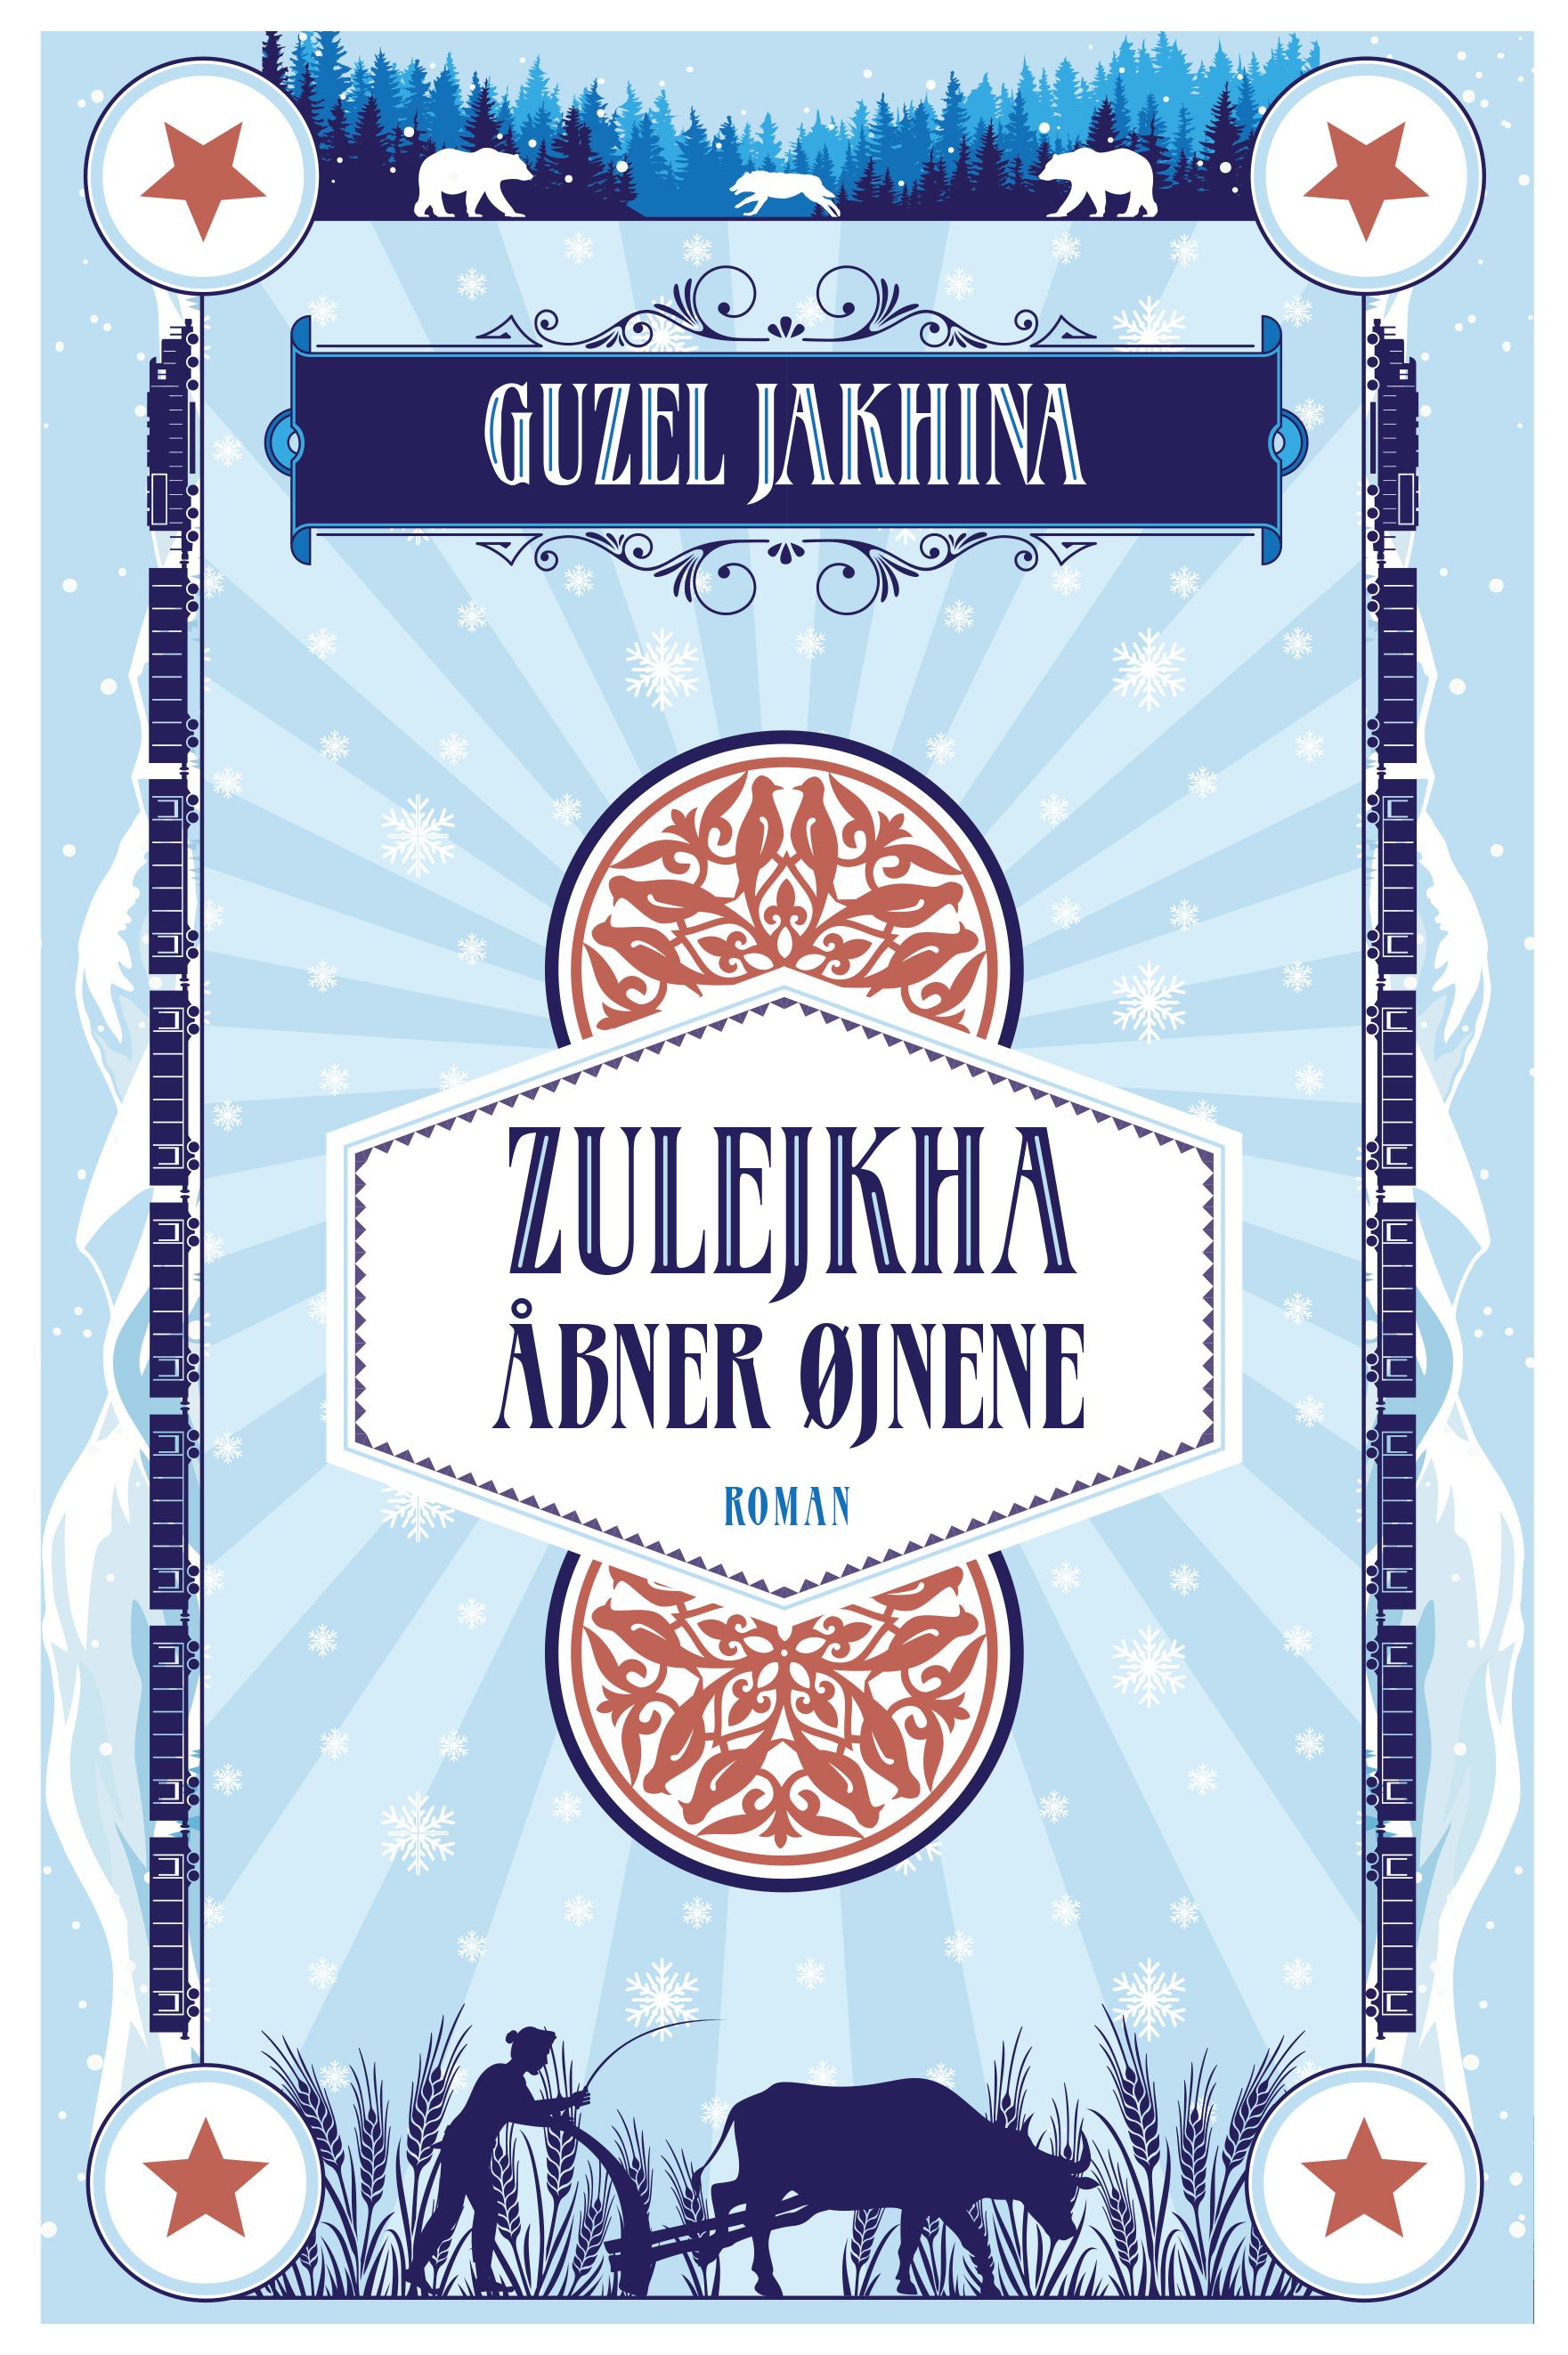 Zulejkha åbner øjnene, e-bog af Guzel Yakhina